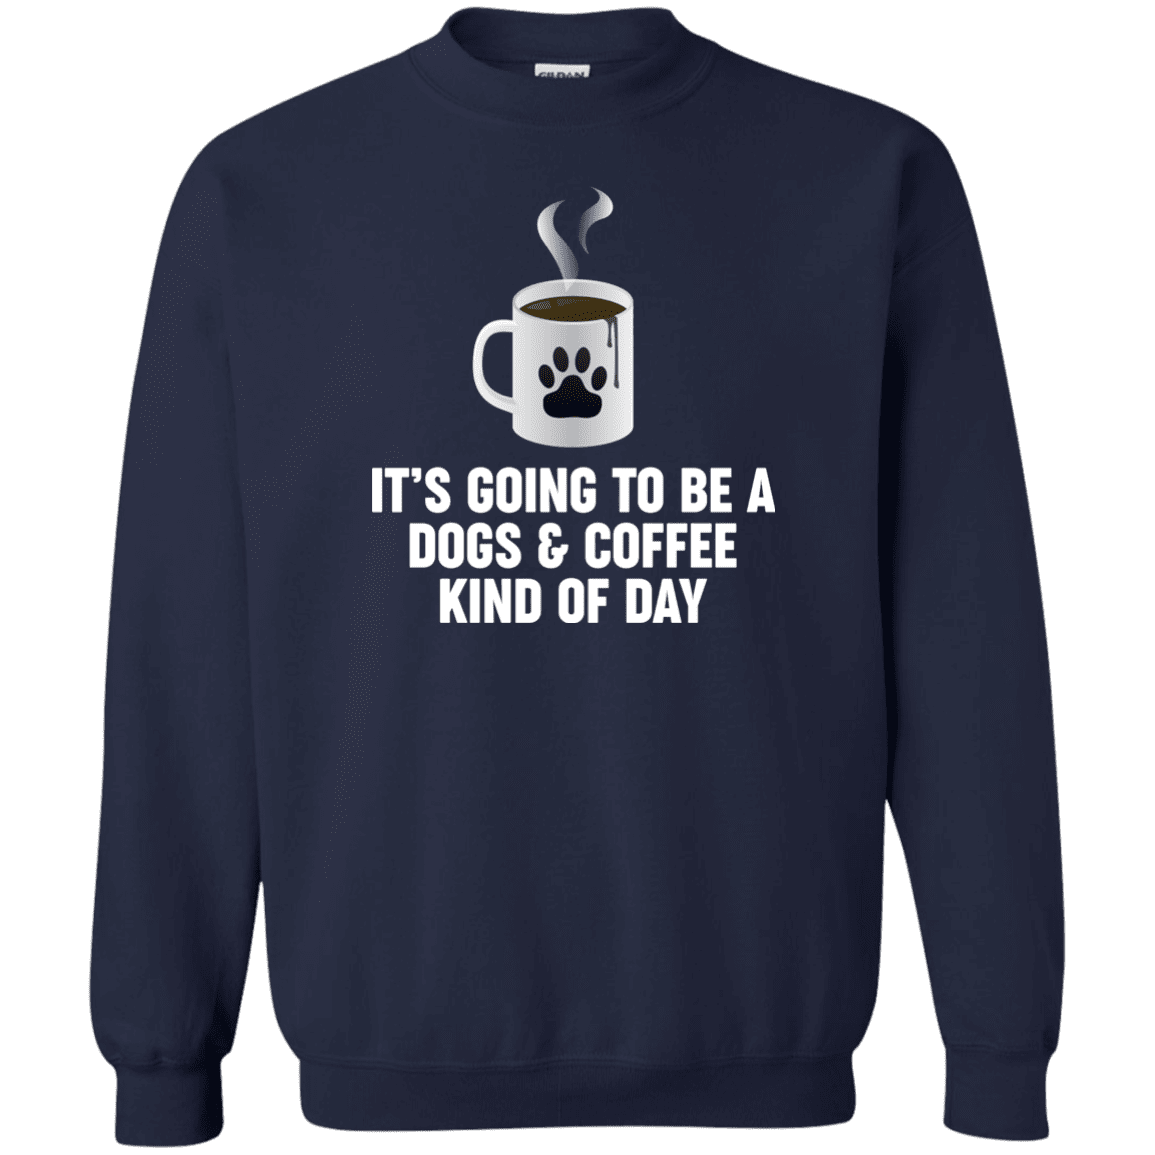 Dogs And Coffee - Sweatshirt.